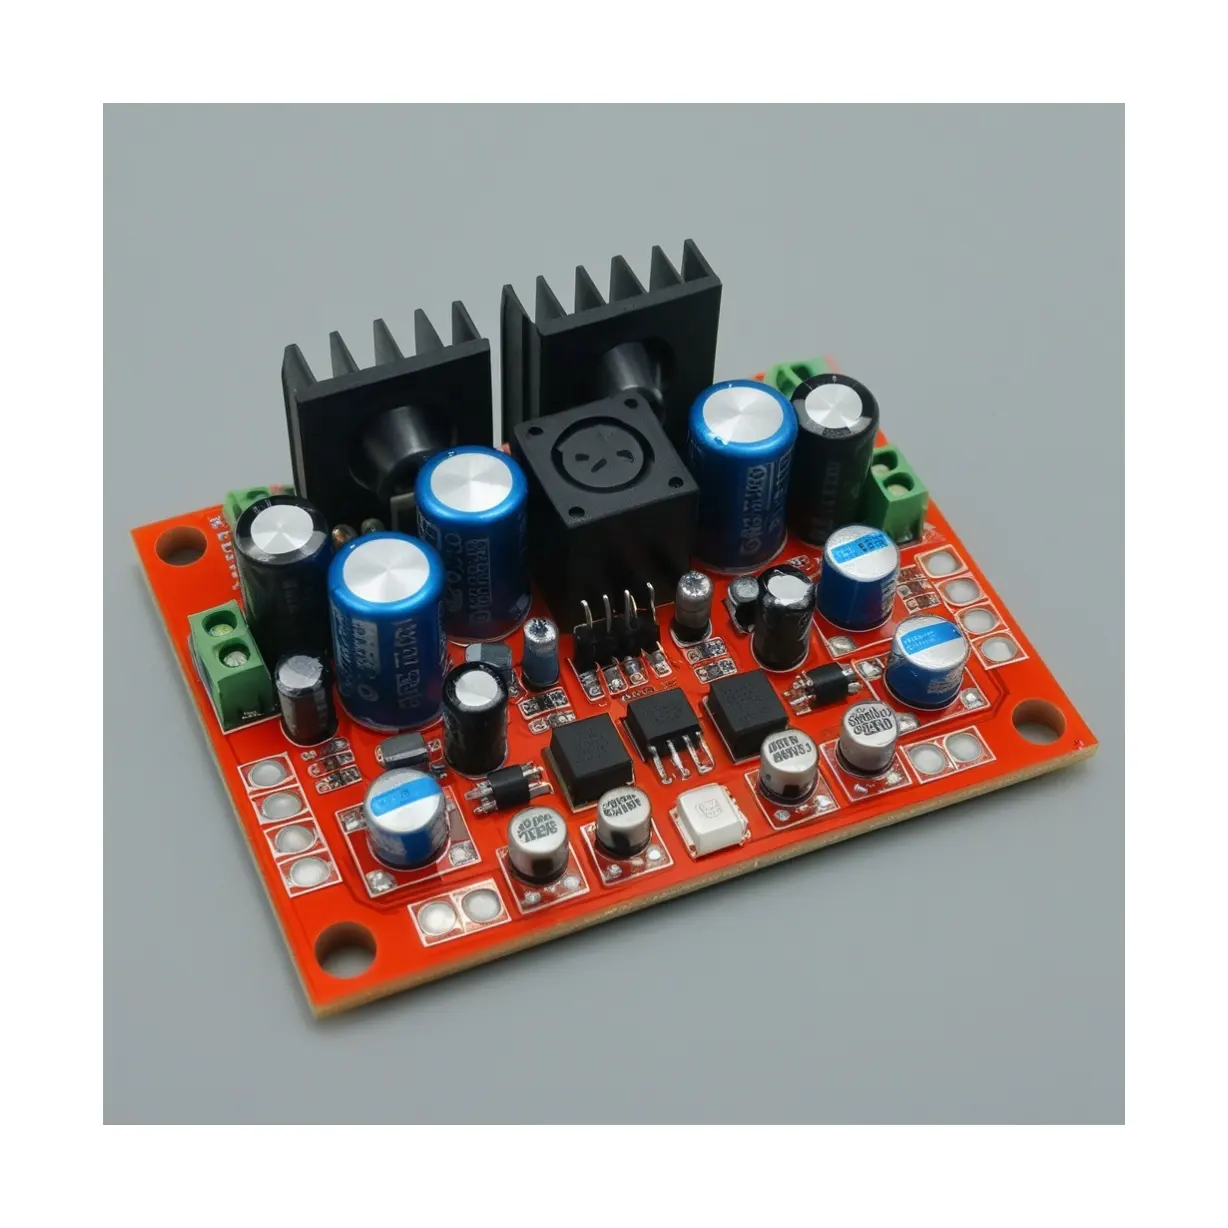 Destek özel geliştirme 2.1 amplifikatör devresi kurulu sınıf D dijital amplifikatör kurulu ses güç amplifikatörü PCBA kurulu